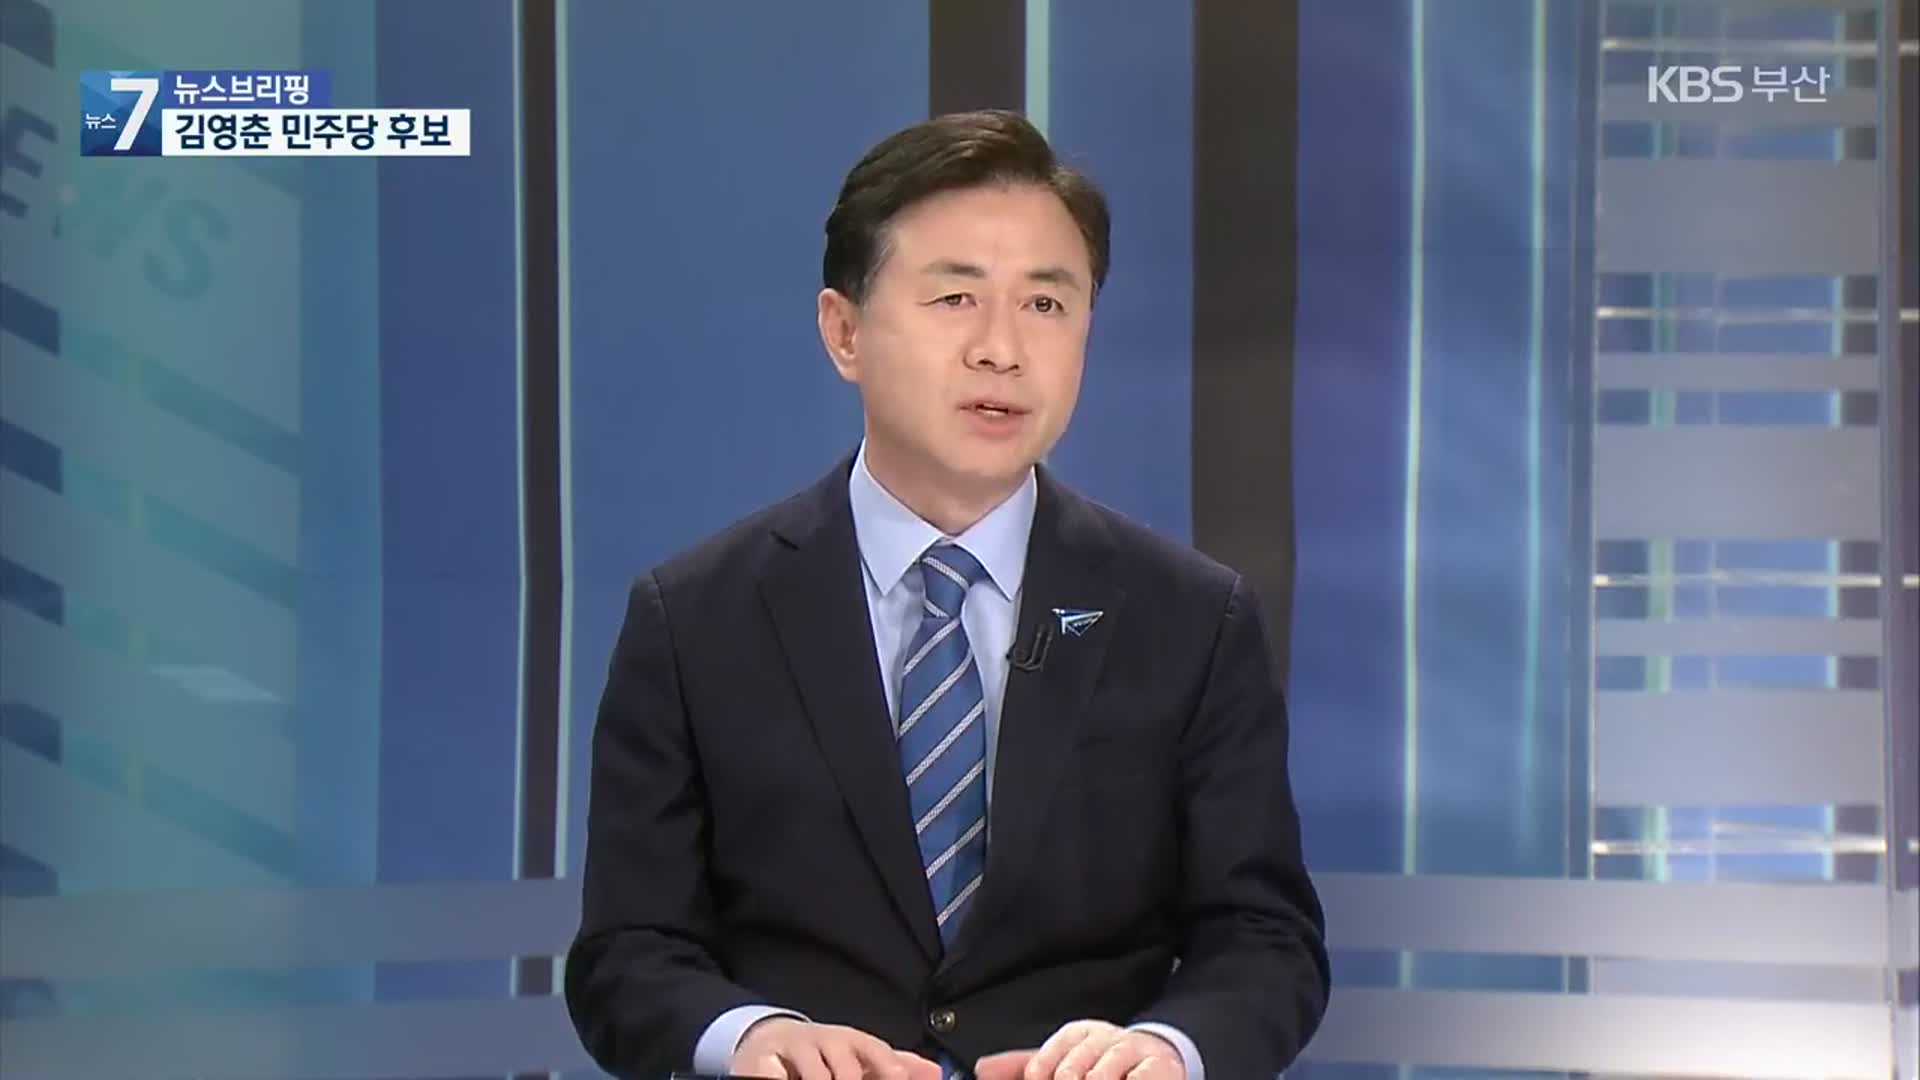 김영춘, 부산시장 보궐선거 민주당 후보로 확정